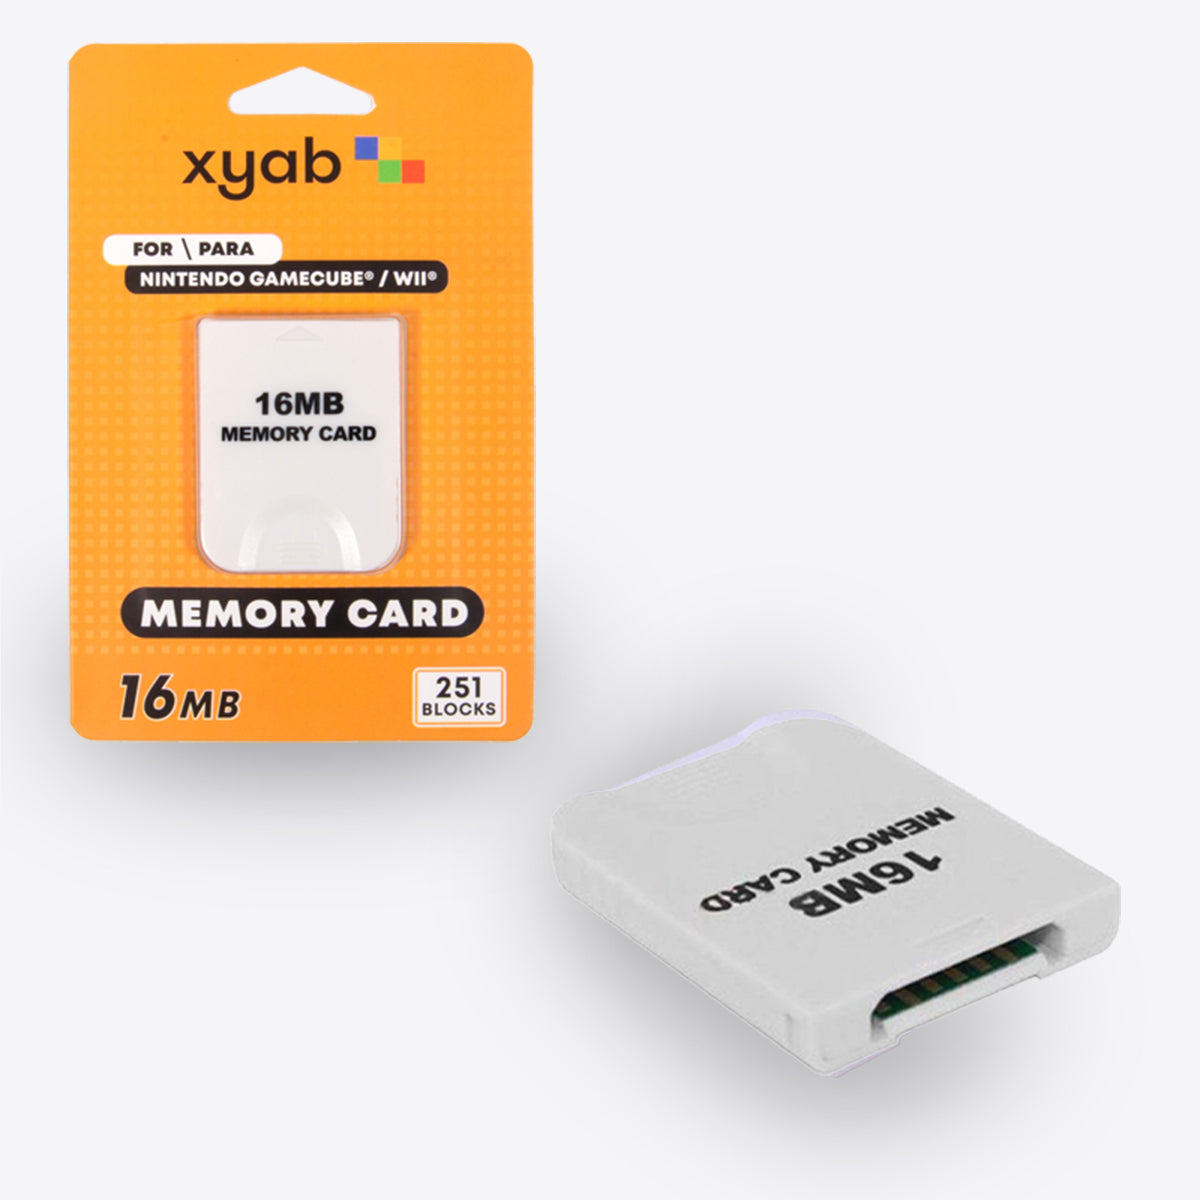 16MB Memory Card